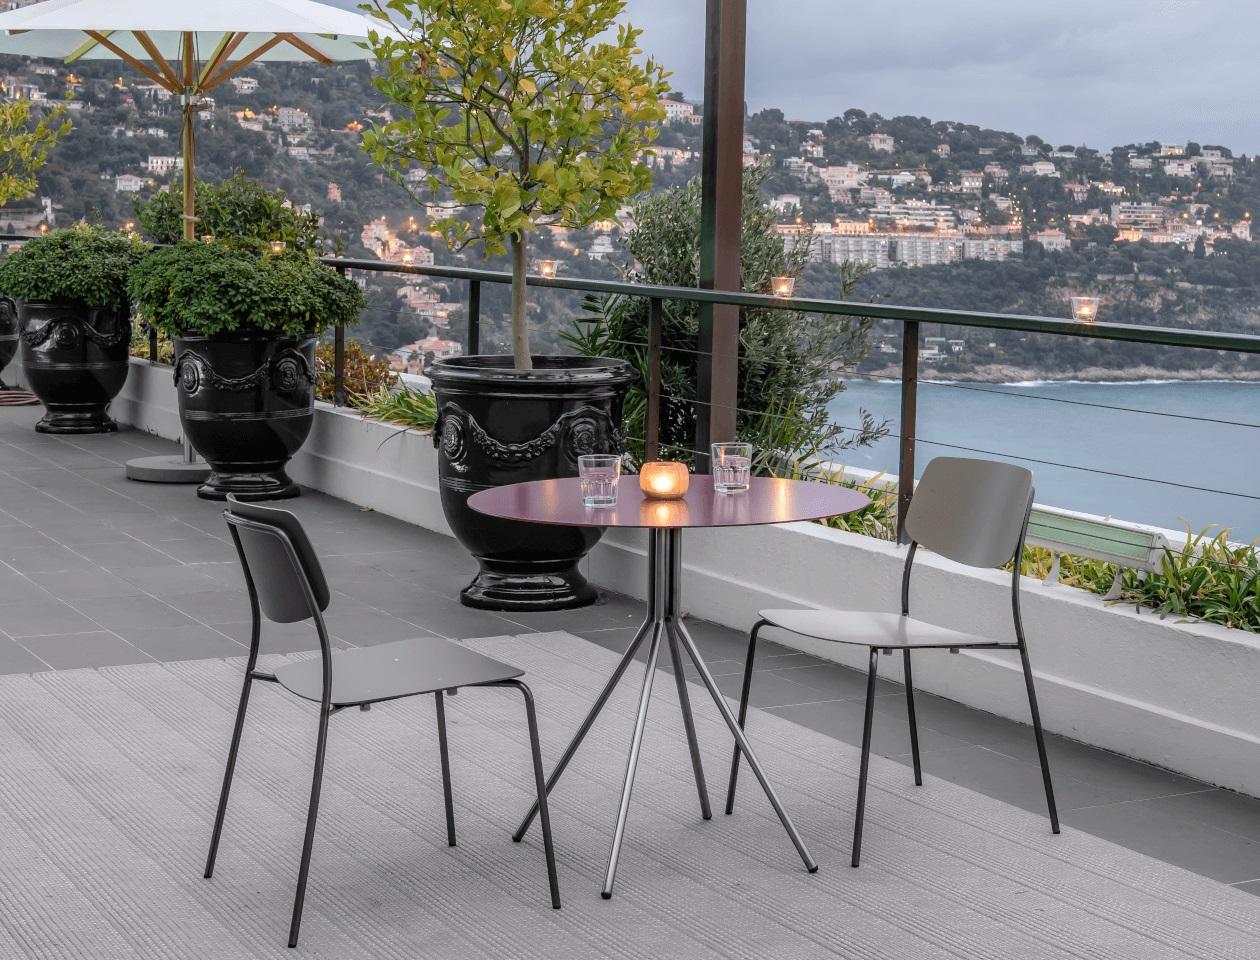 Swiss Felber C18 Indoor/Outdoor Patio Chairs by Dietiker in Aubergine/Wine, in Stock